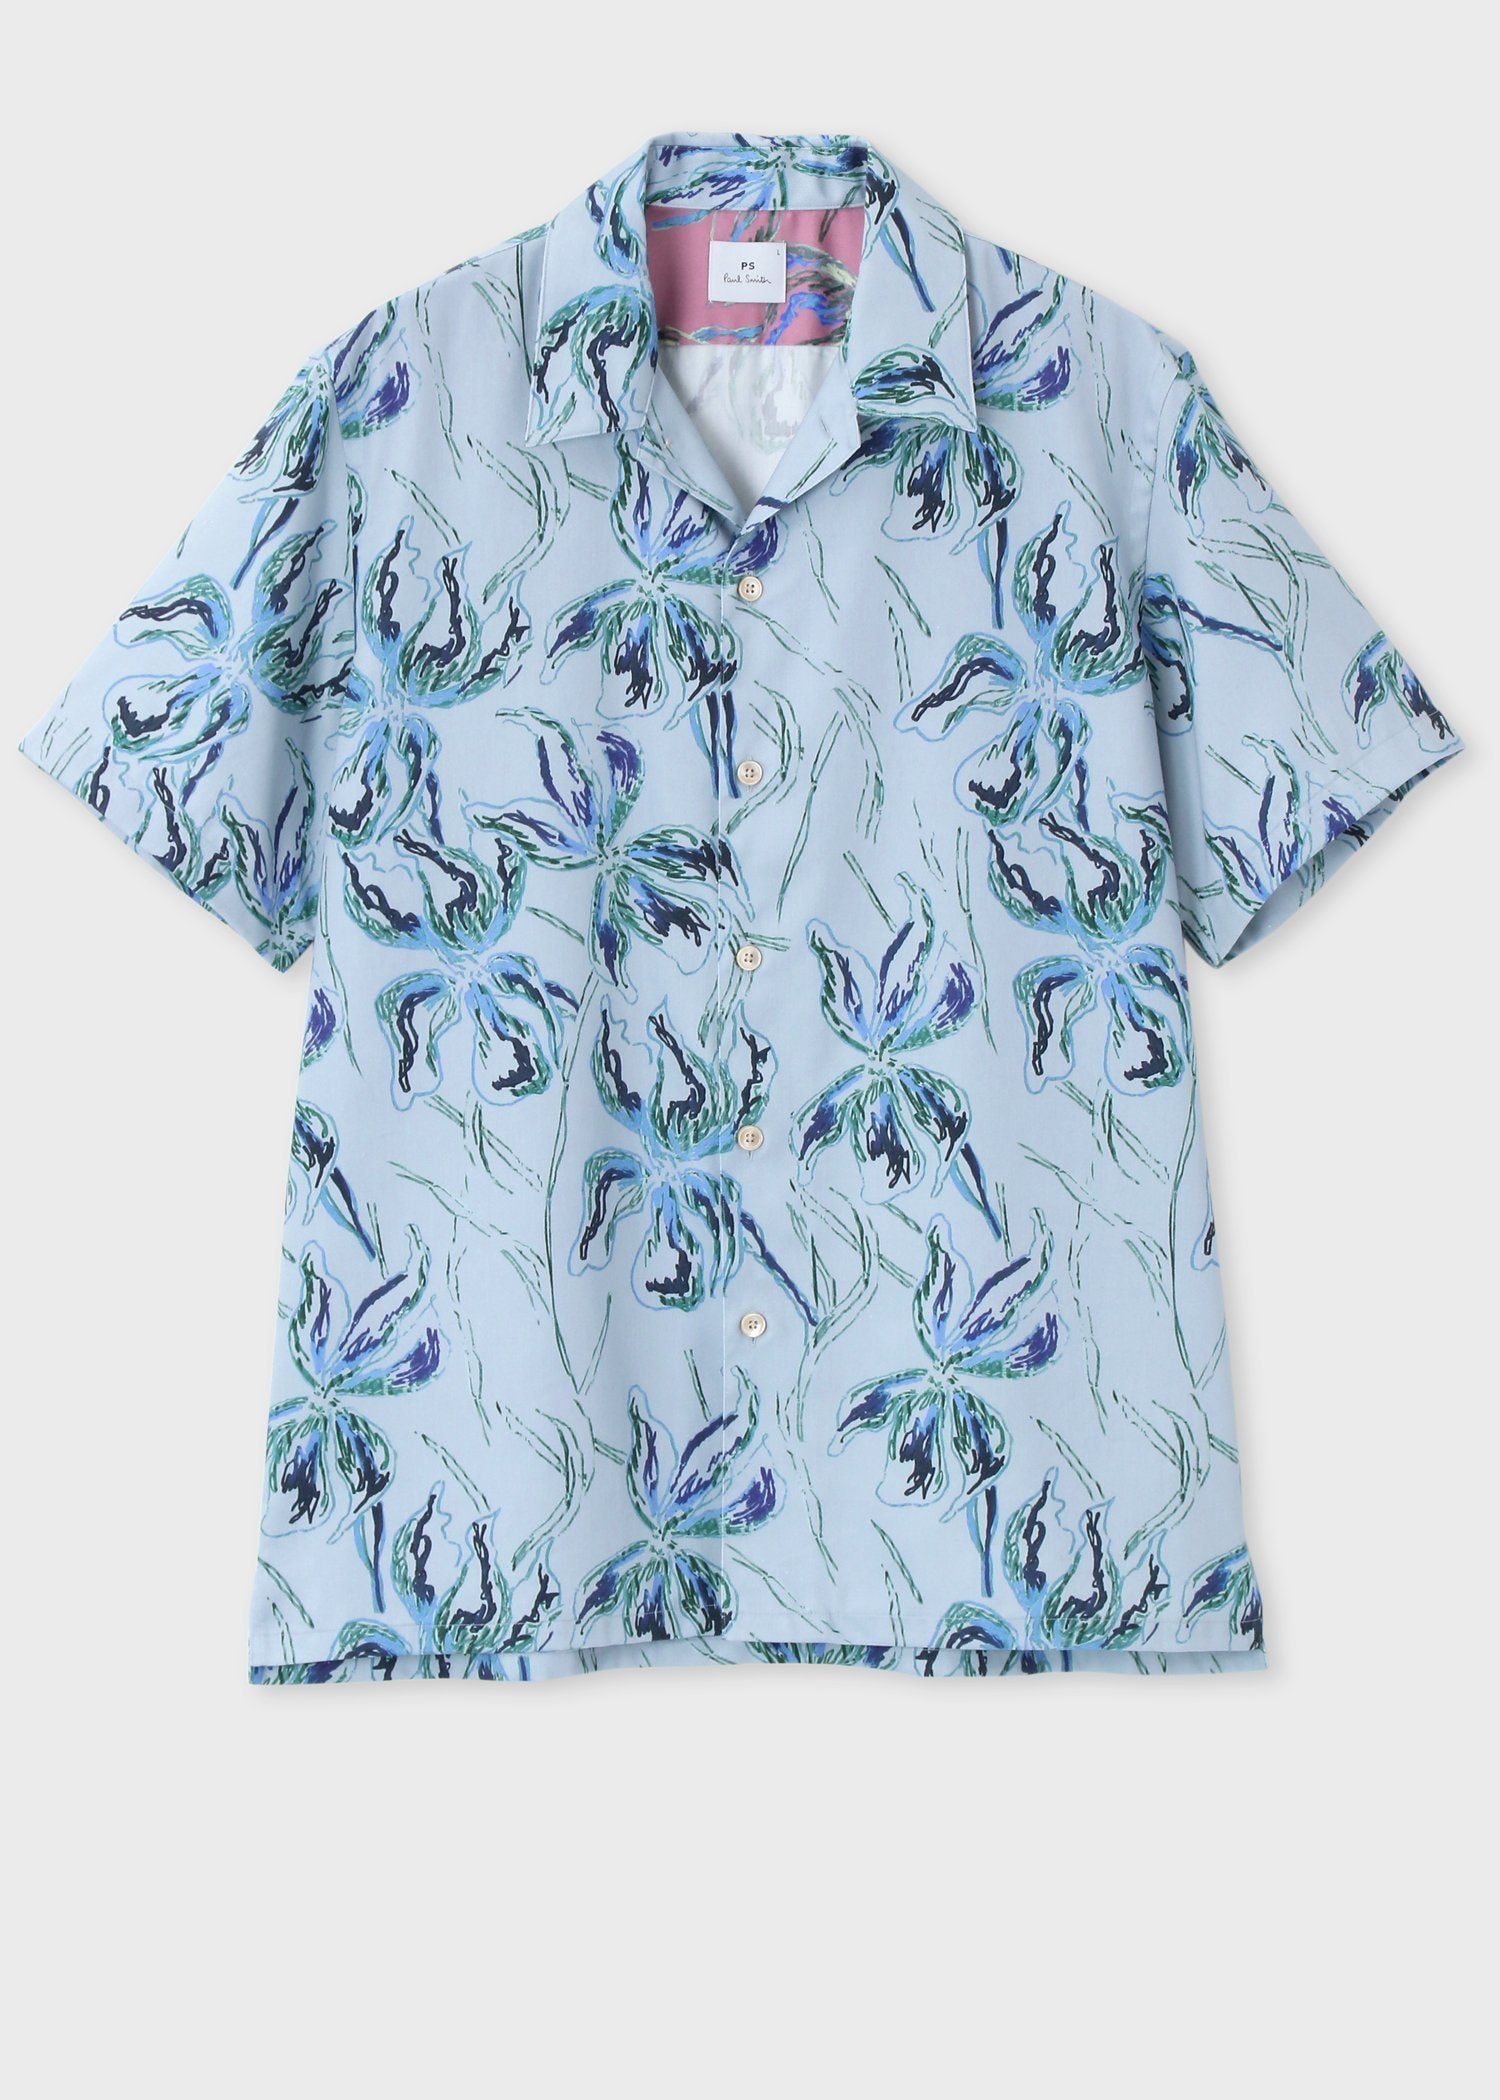 "Gladiolus" オープンカラーシャツ